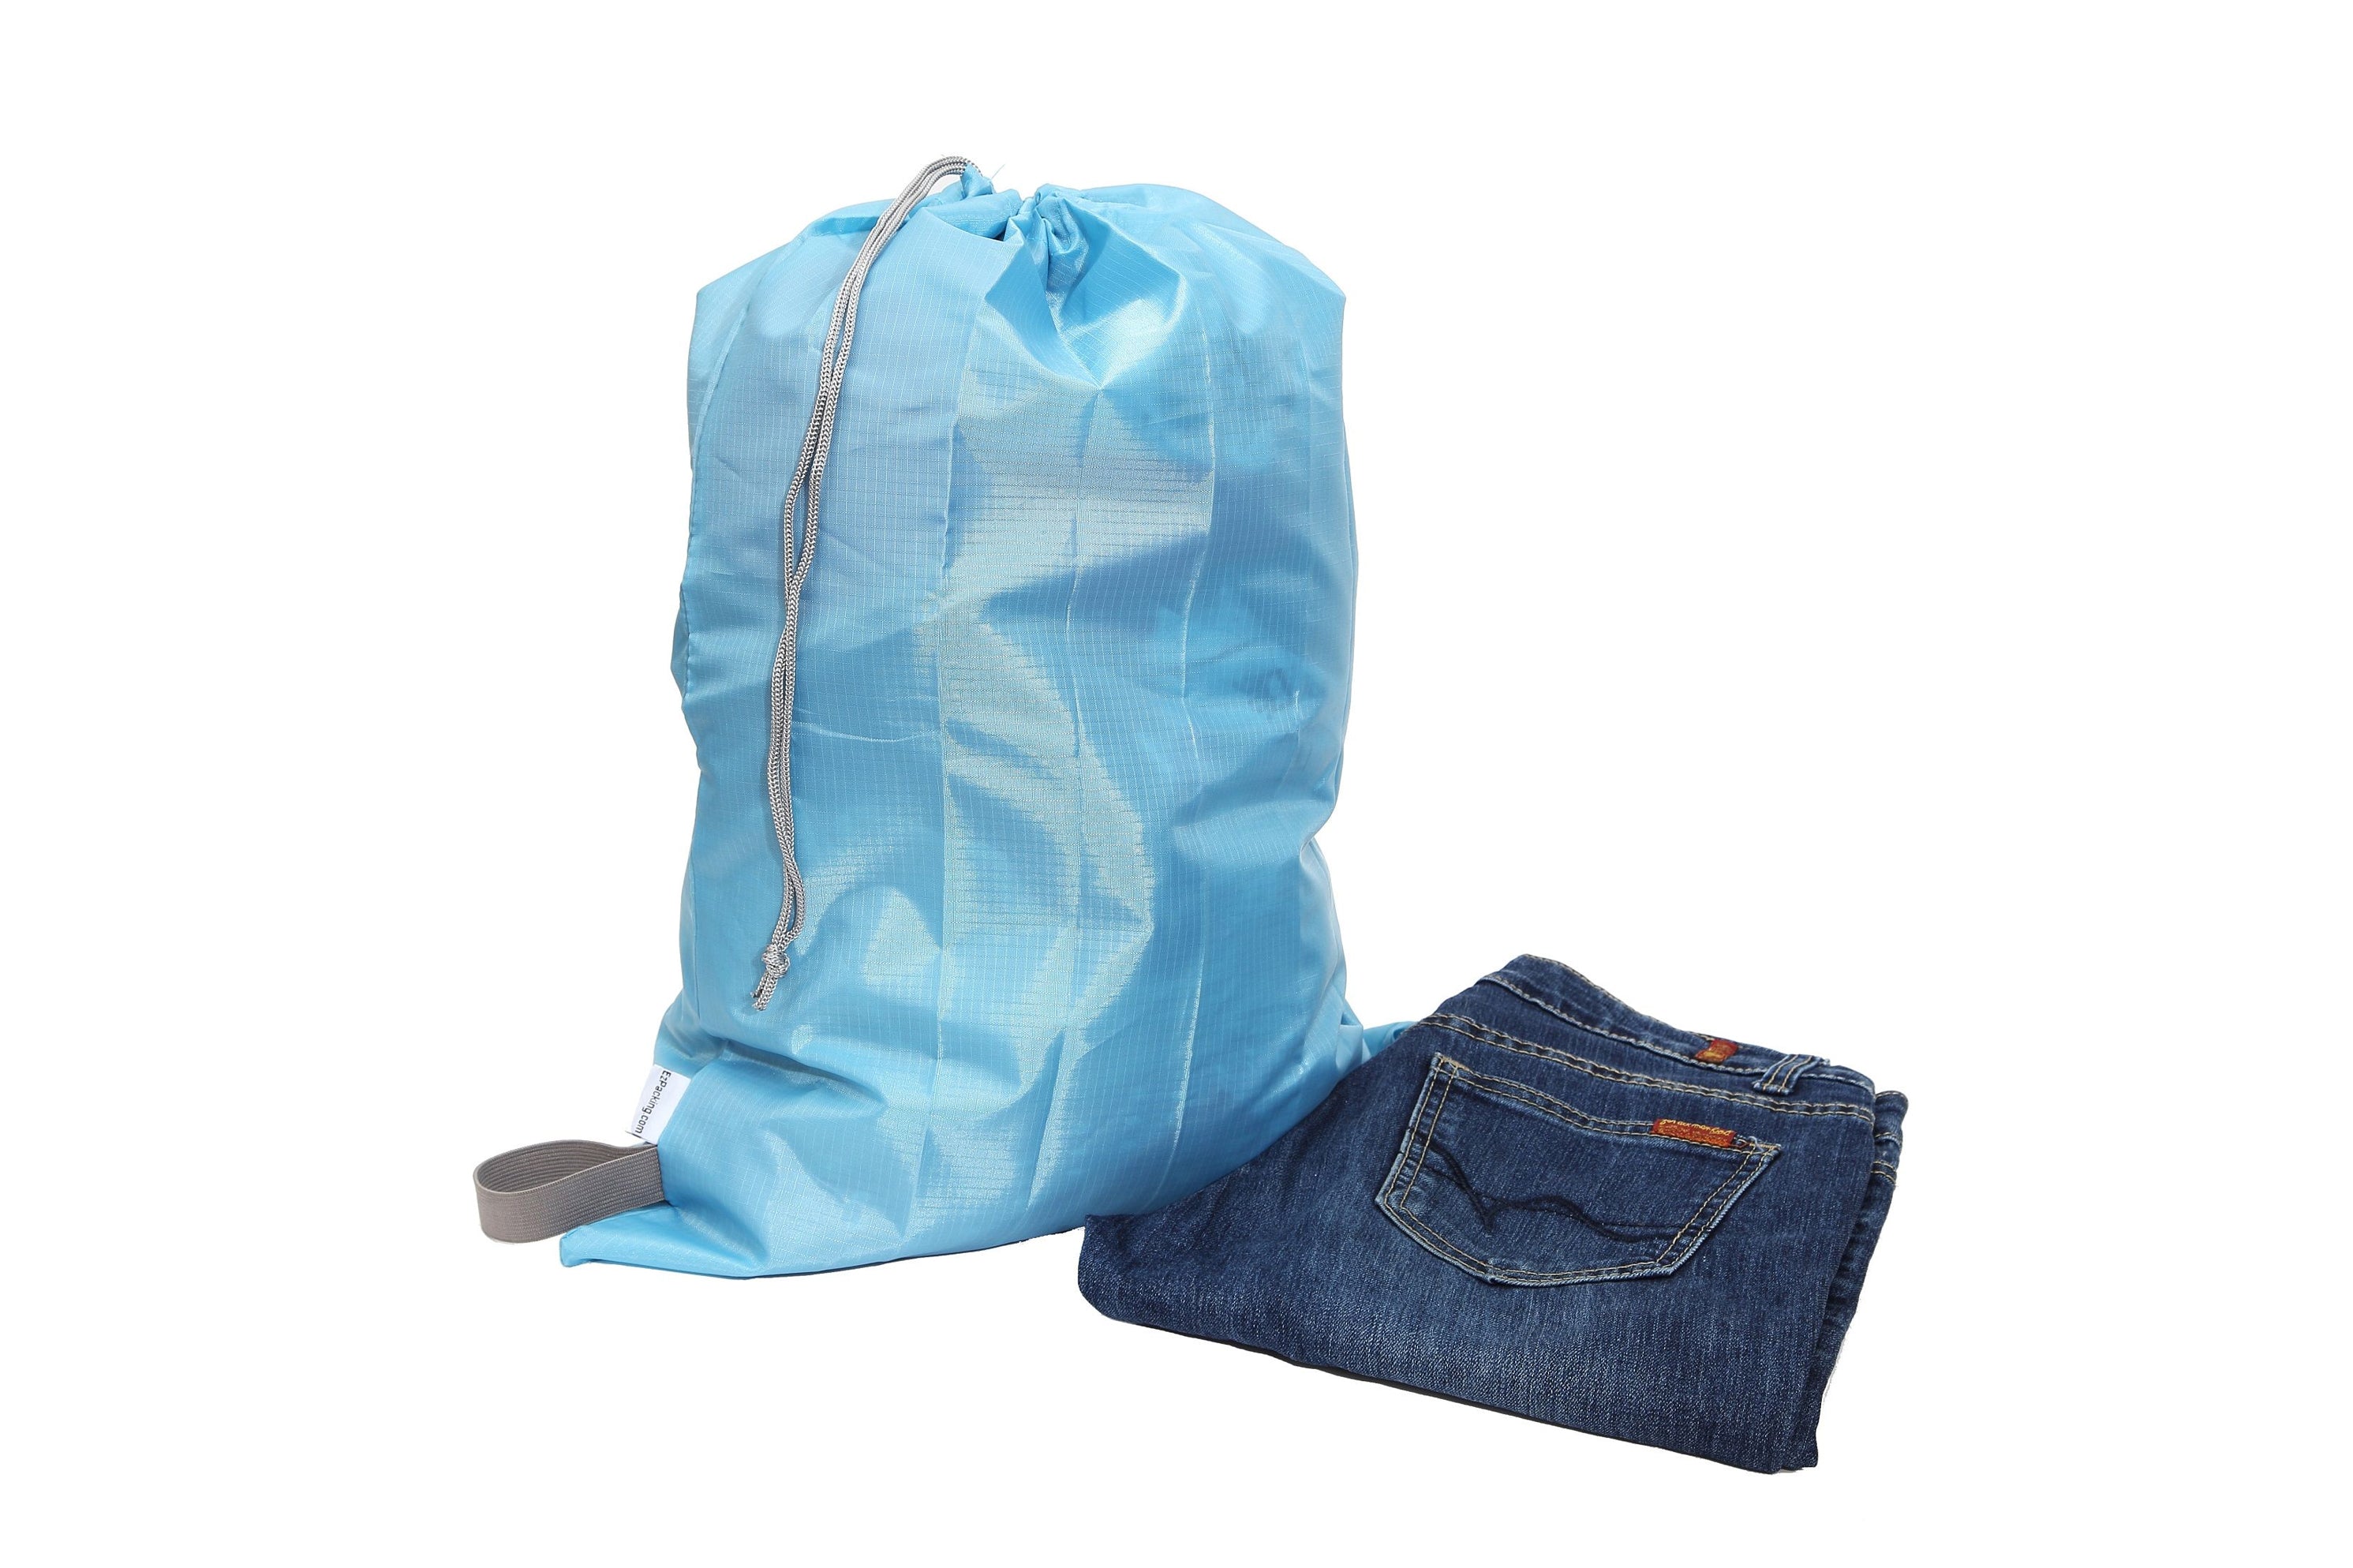 The Trend Setter Laundry Bag